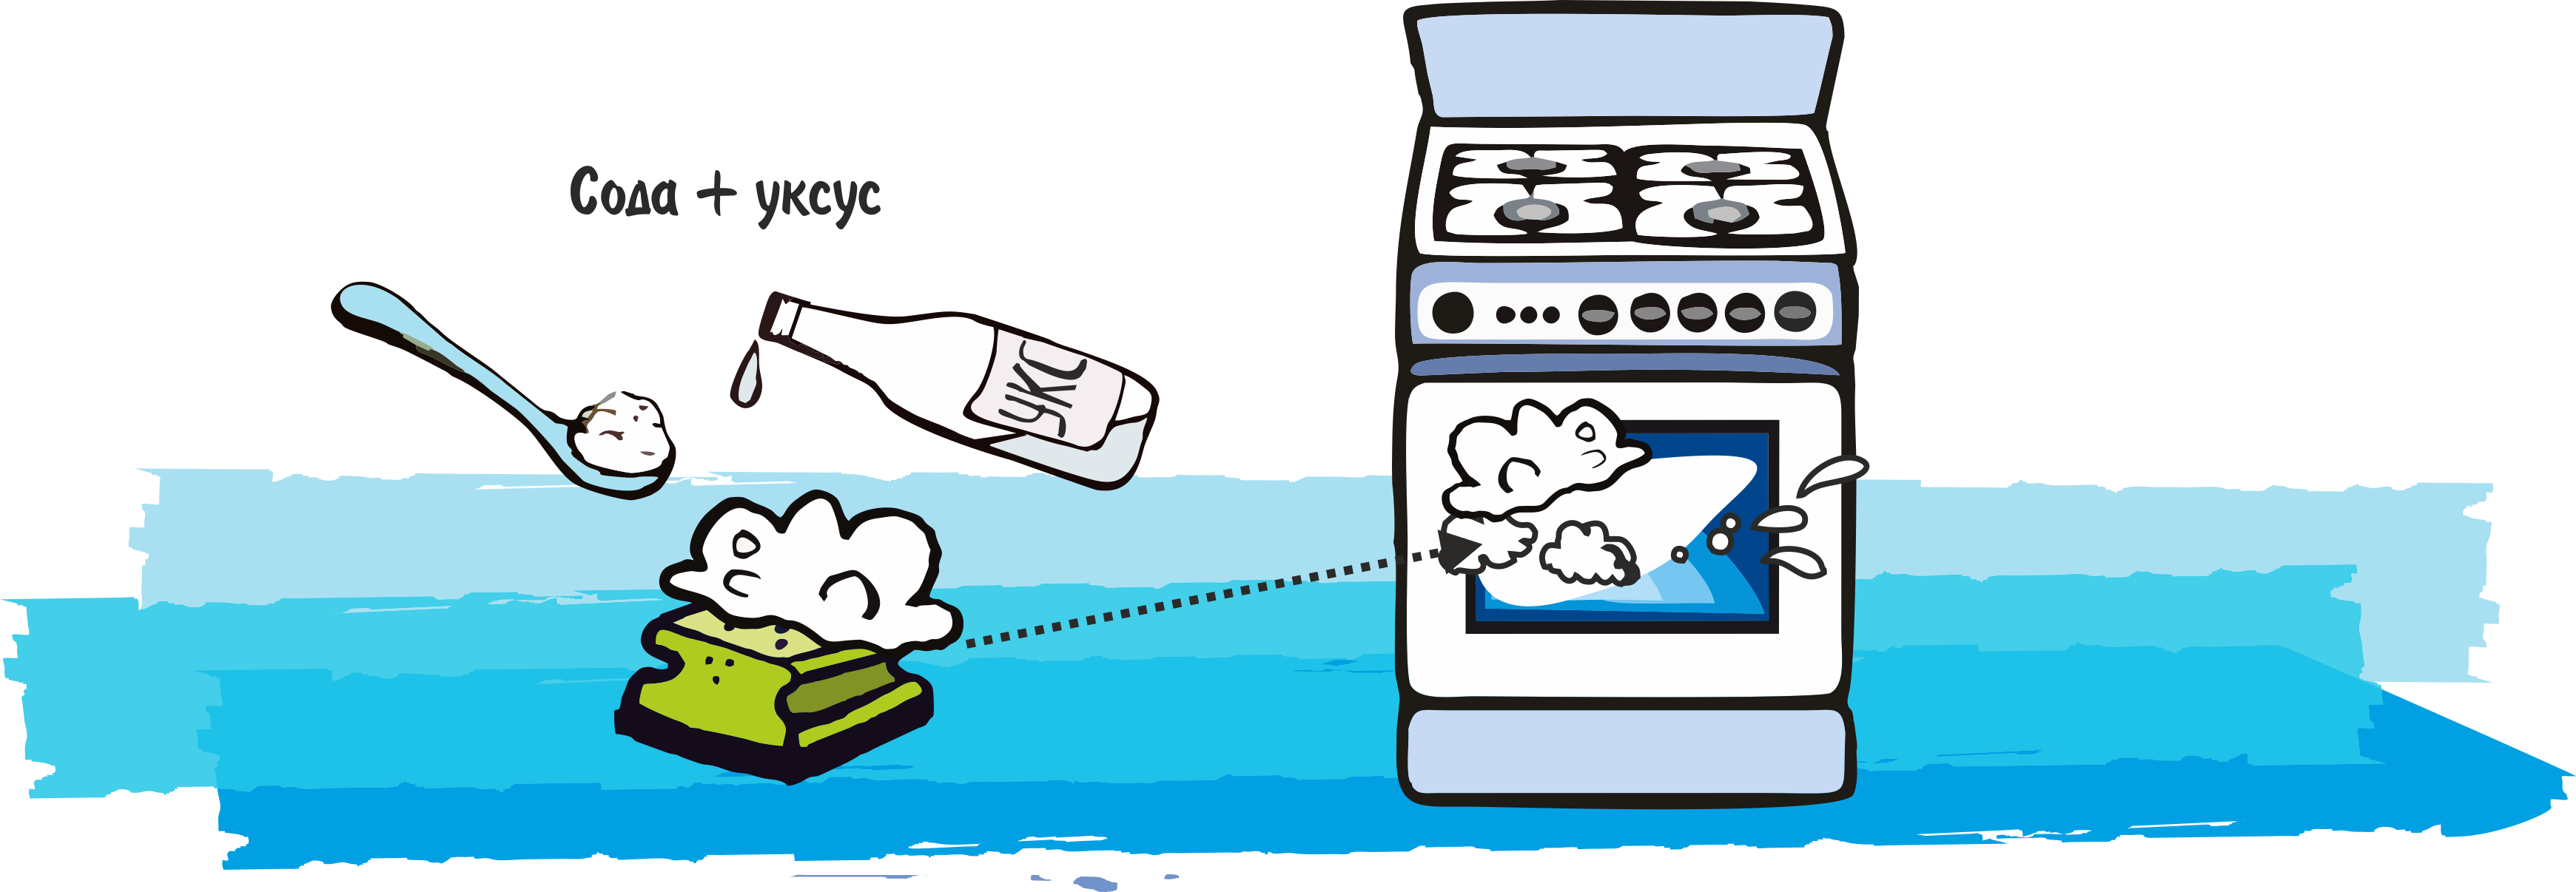 Как почистить духовку? Сравнительный тест народных средств и HG. Фото До-После - 2